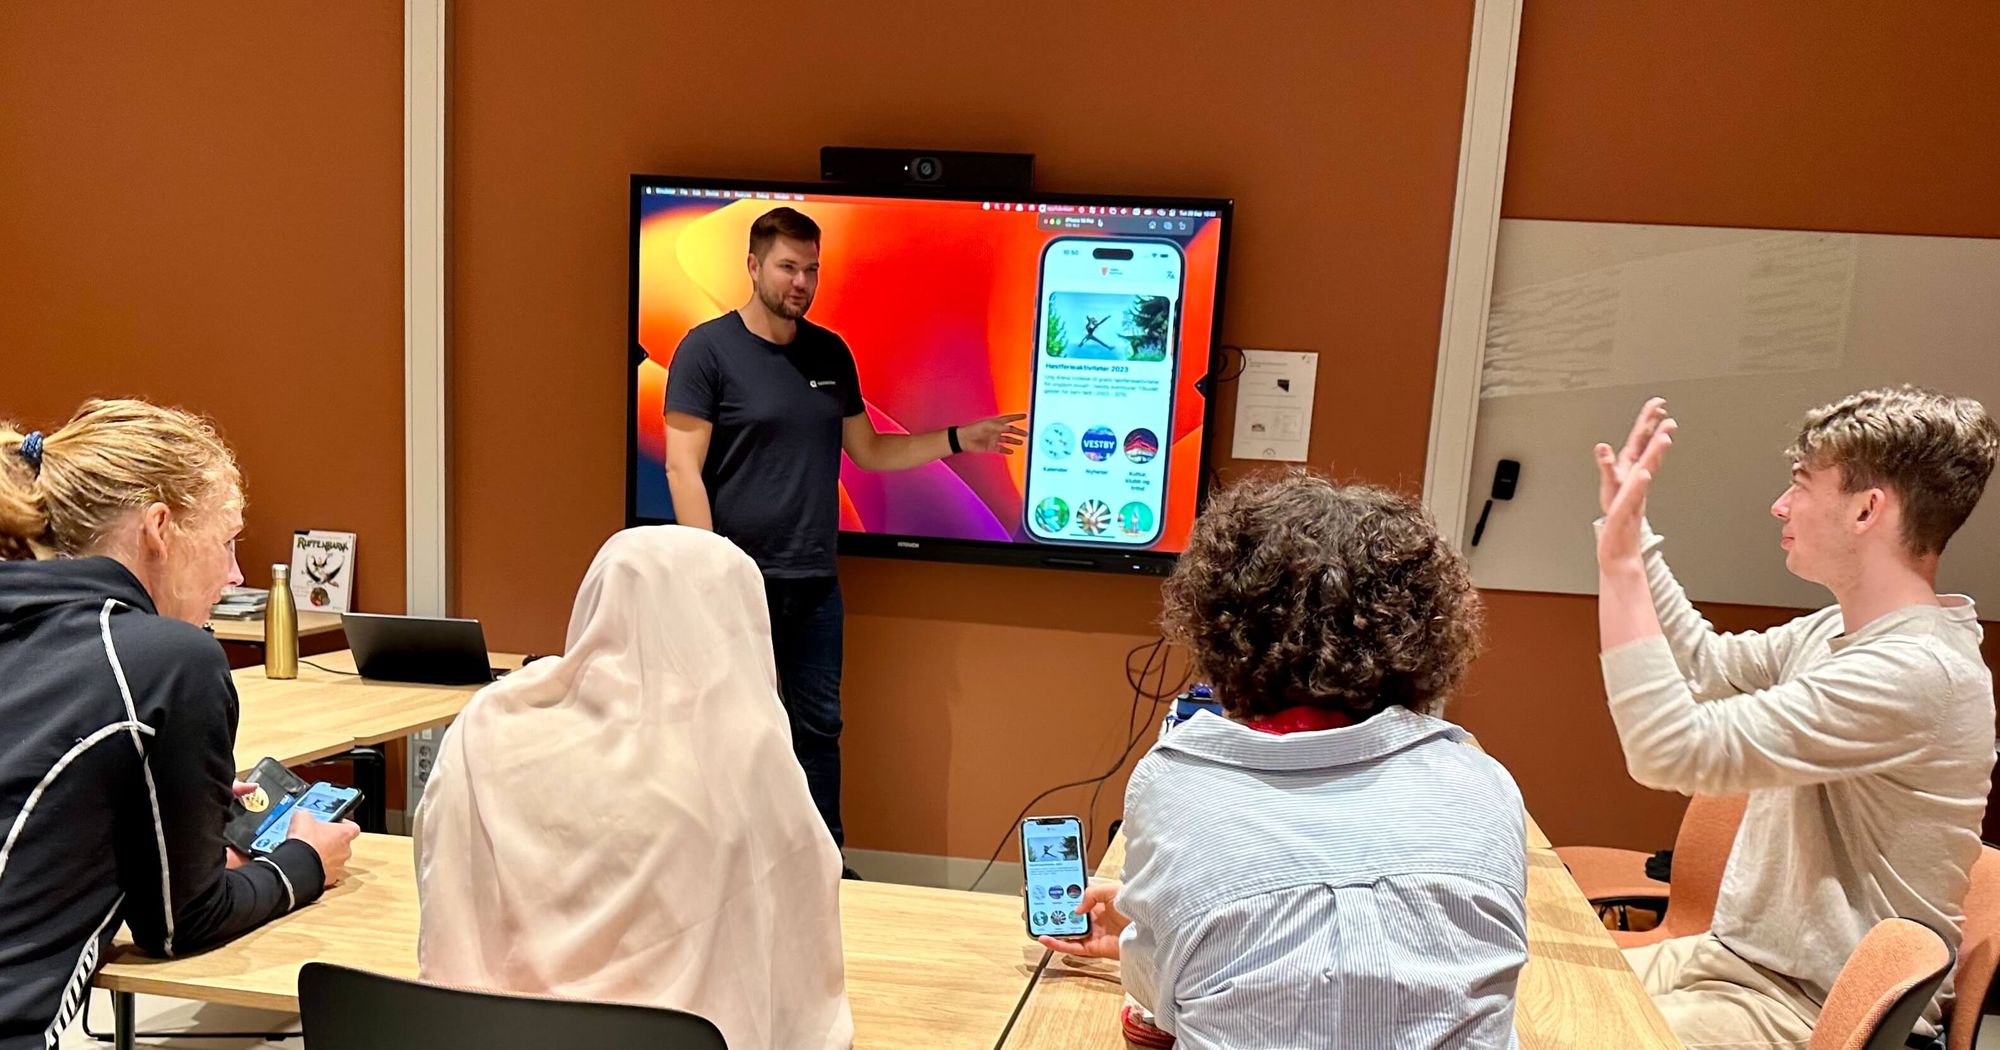 Fire personer rundt et bord ser på en person som presenterer en app på storskjerm. Foto.